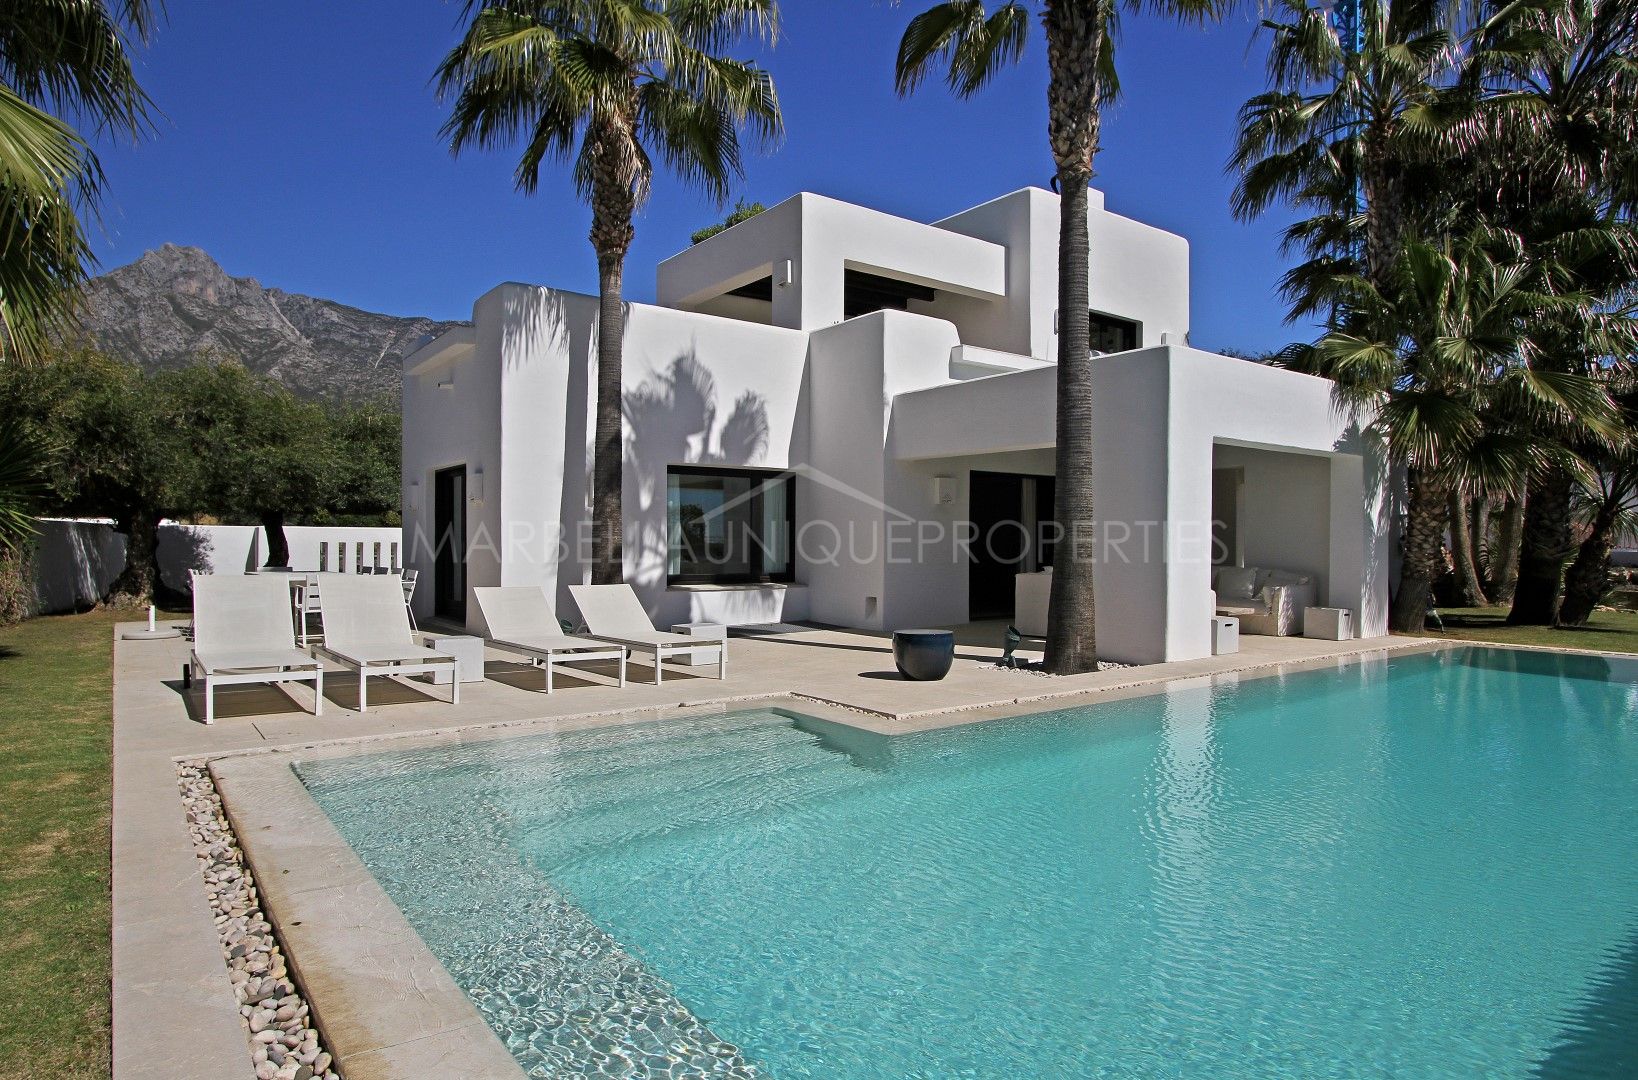 Luxury Ibiza style villa in Altos de Puente Romano